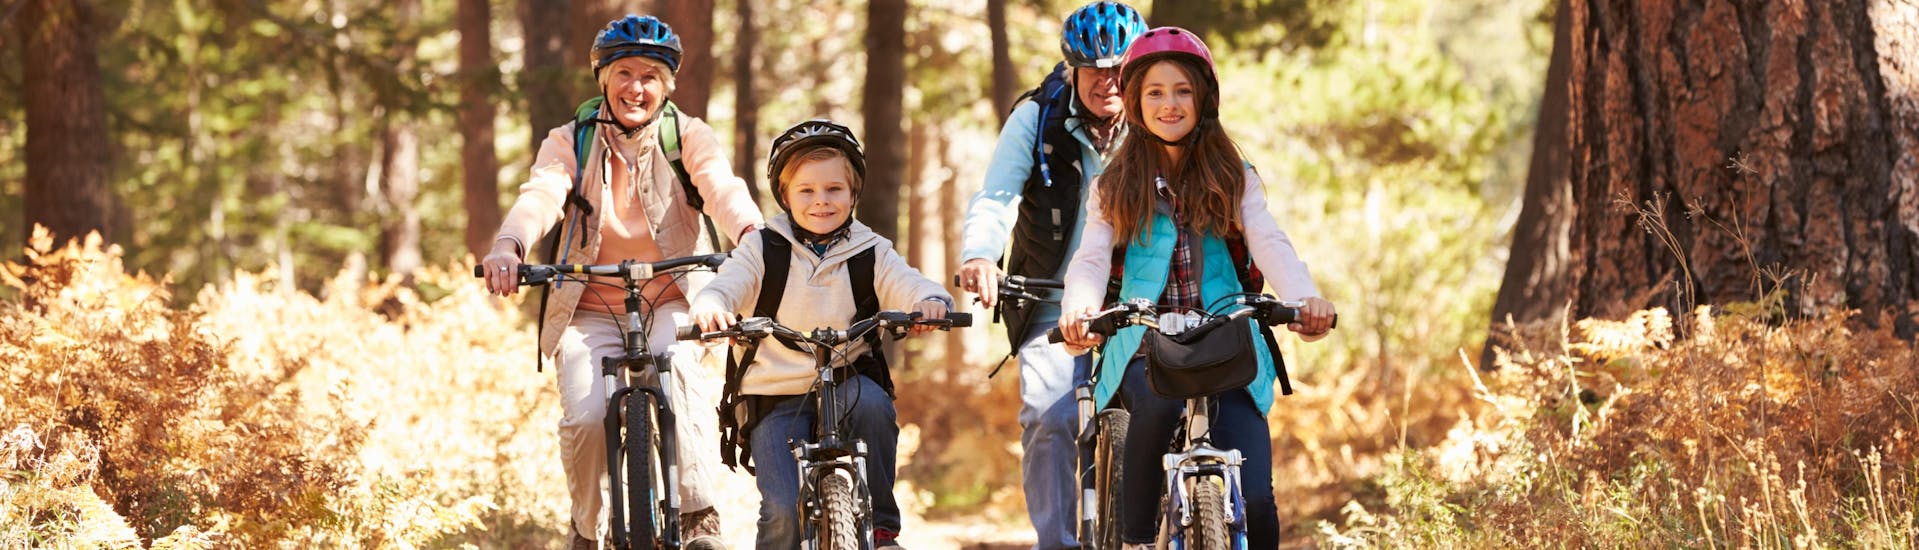 Eine Familie fährt mit geliehenen Fahrrädern des örtlichen Fahrradverleihs in Les Gets durch den Wald.